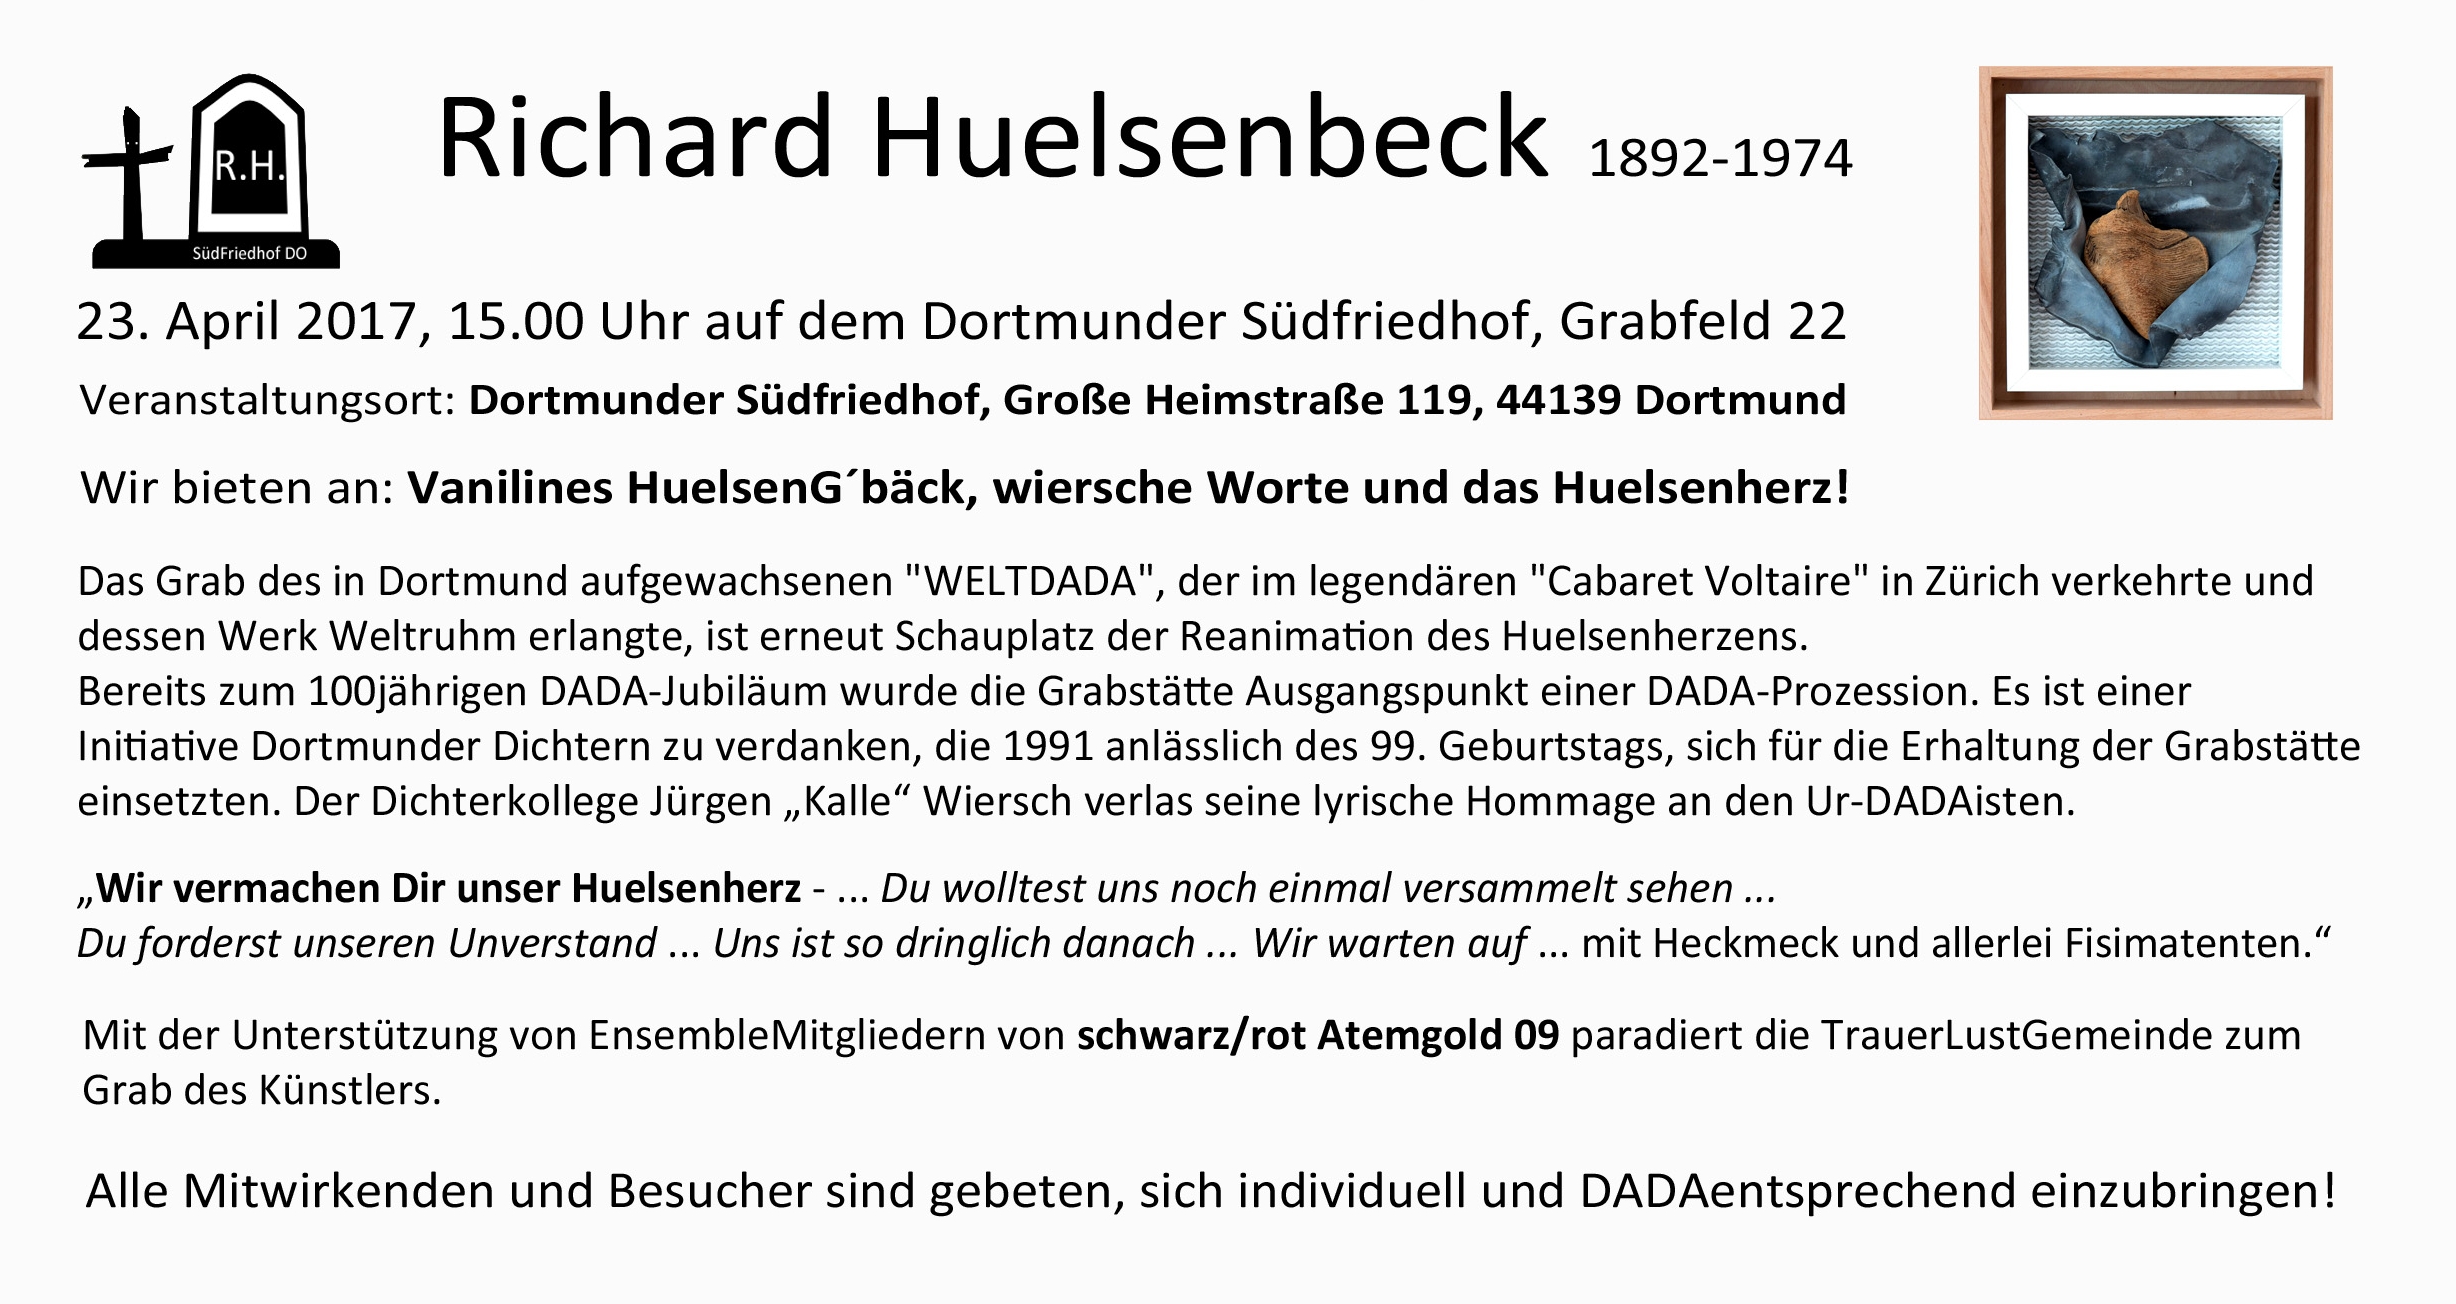 Richard Hülsenbeck zum 125. Geburtstag am Grab